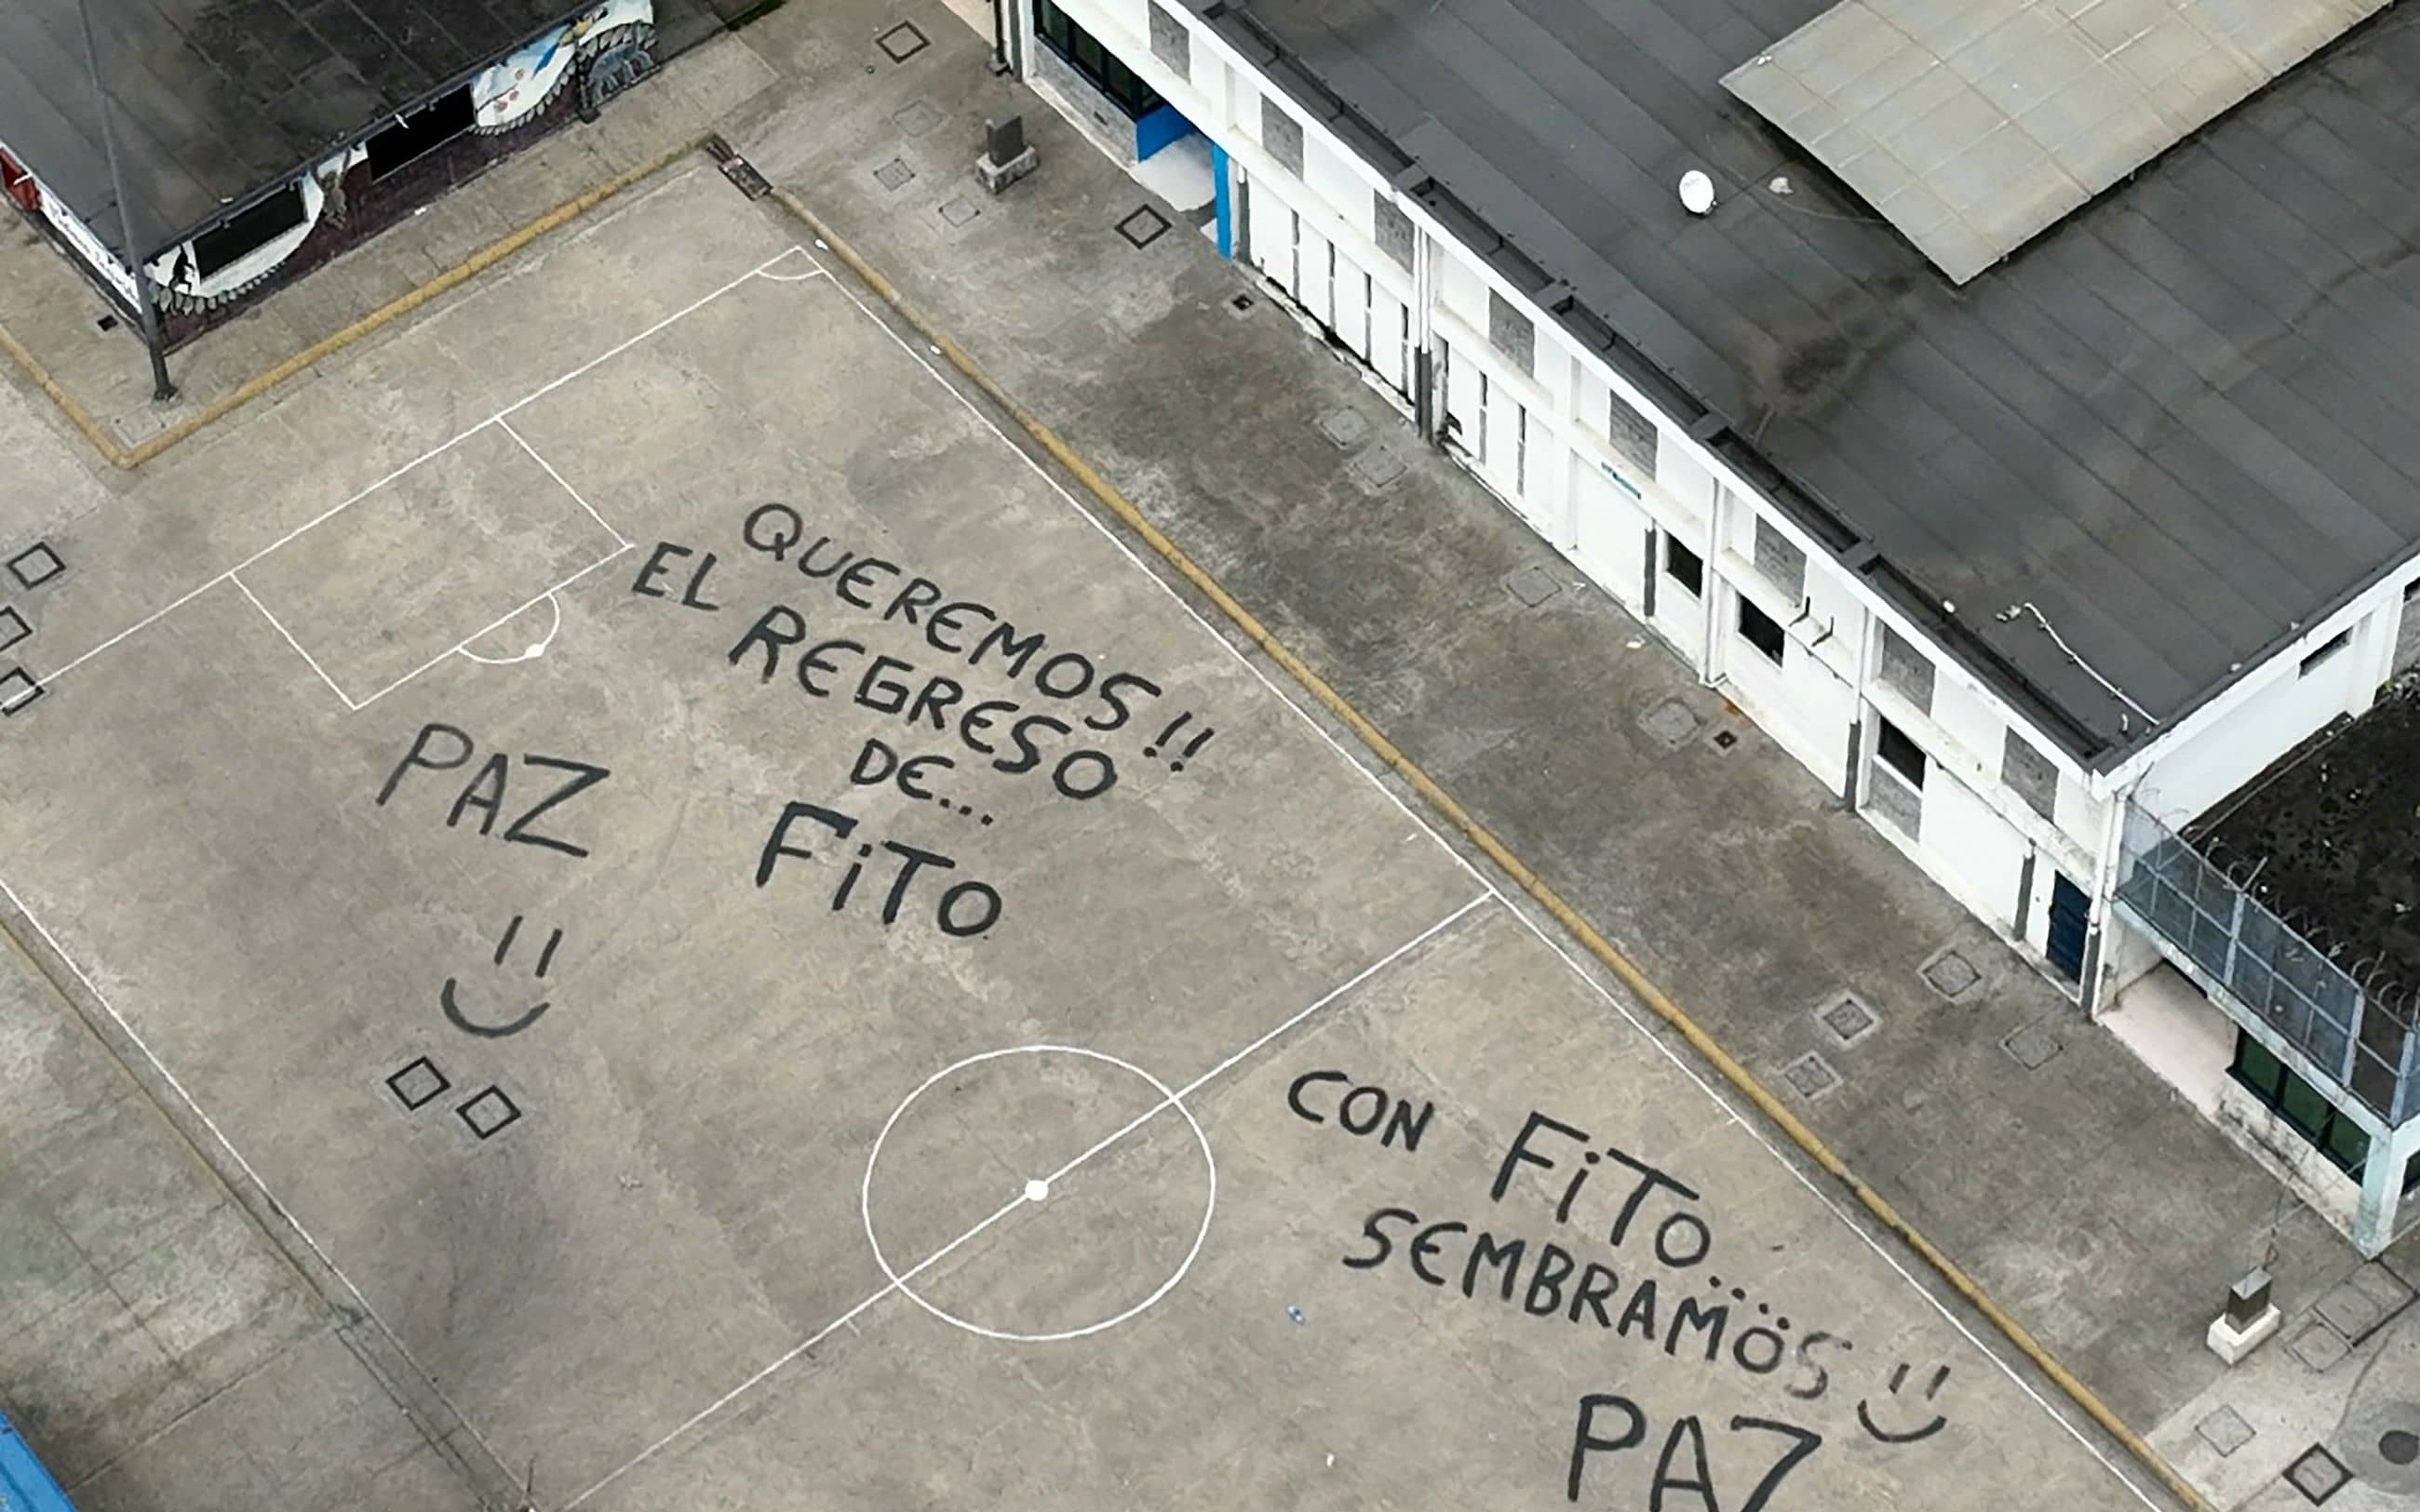 "Wir wollen, dass Fito zurückkommt. Frieden" steht in großen Buchstaben auf dem Sportplatz eines Gefängnisses in Guayaquil.